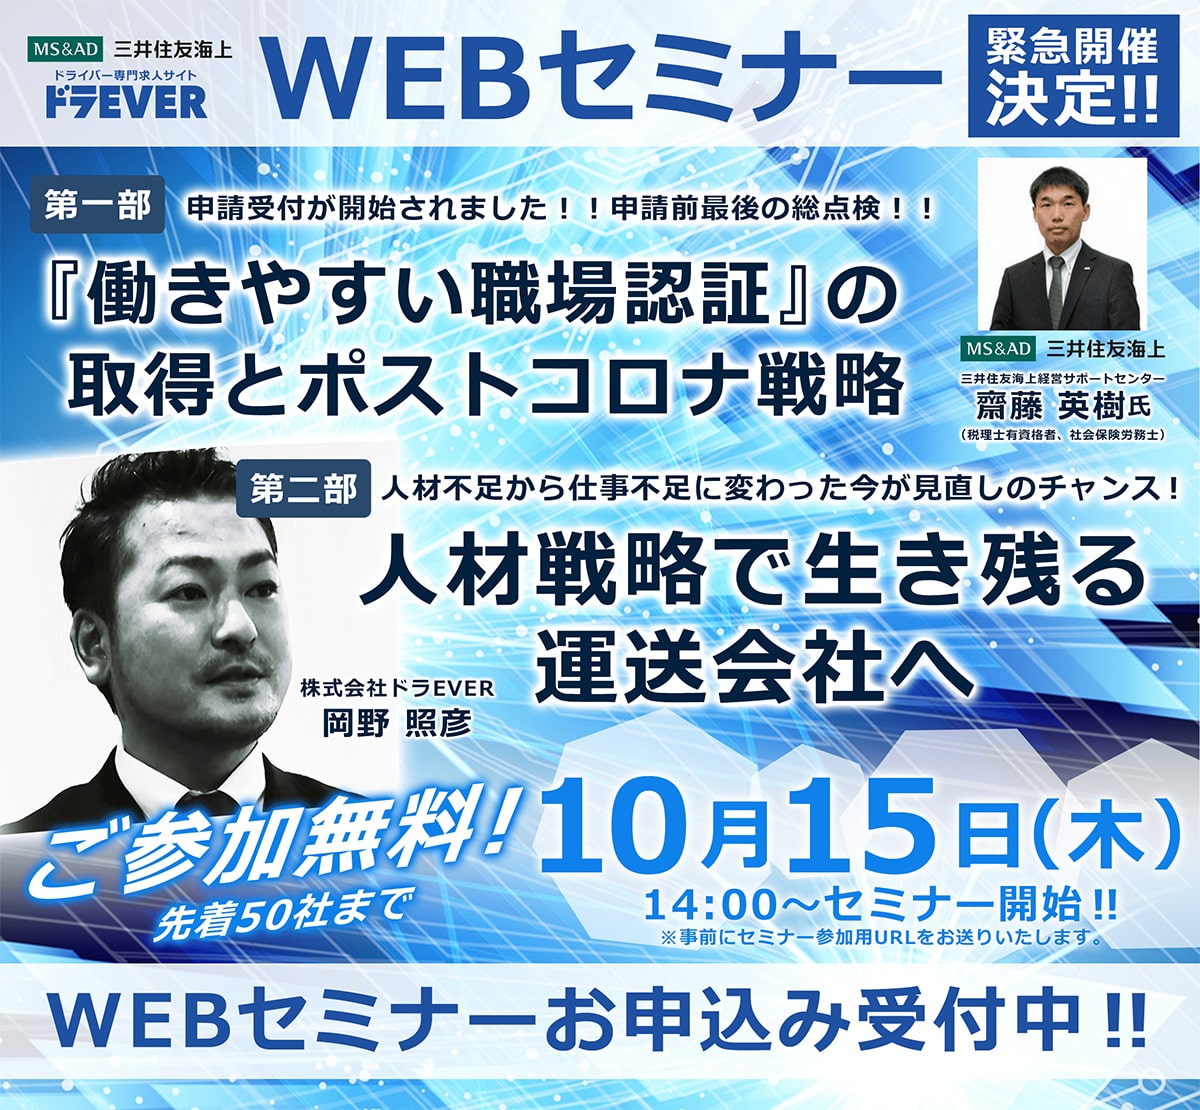 10月15日(木)三井住友海上主催のWEBセミナーに弊社ドラEVERの岡野照彦が登壇します。